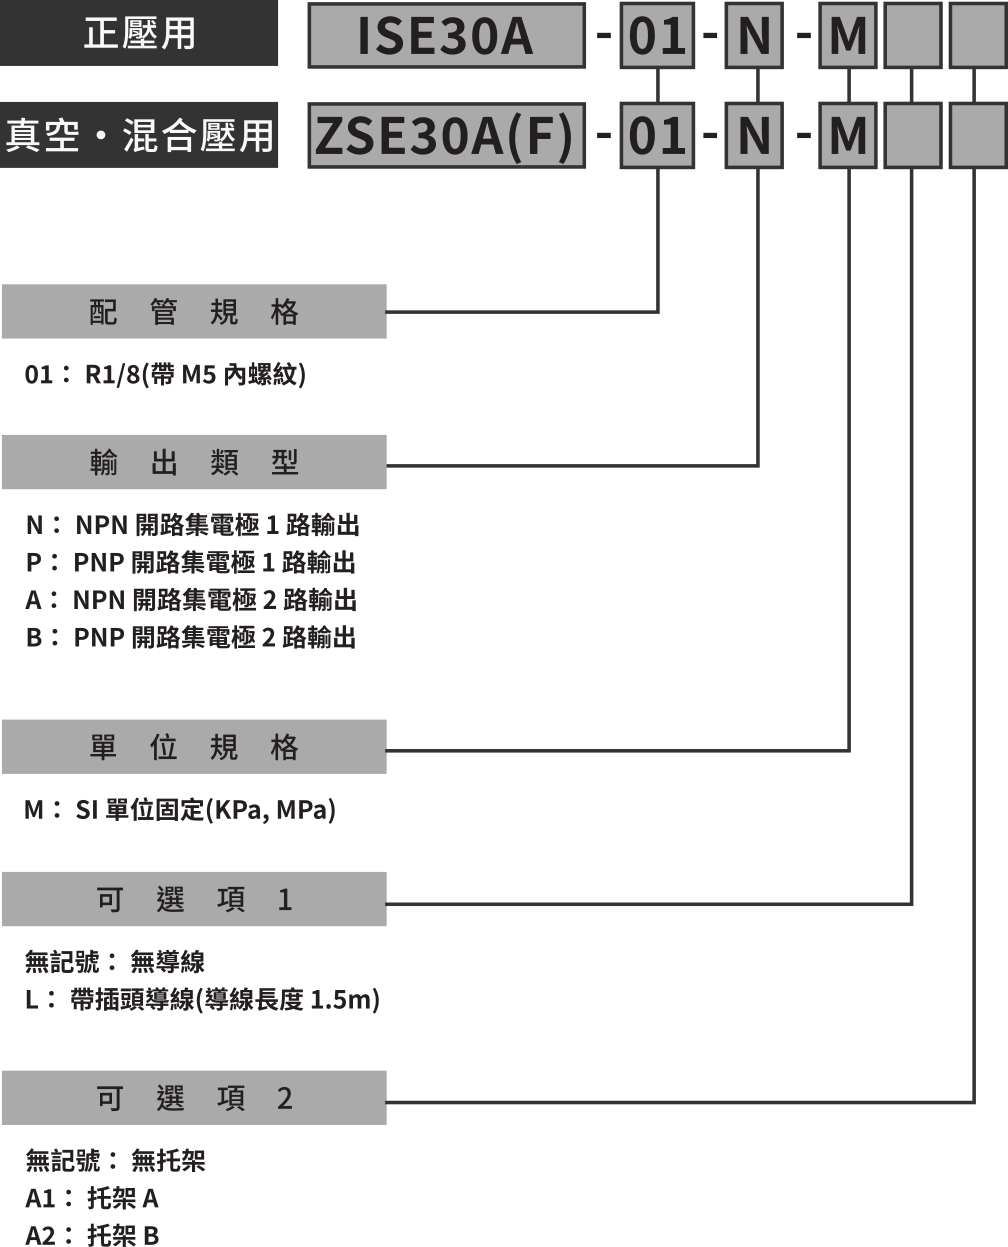 2 色顯示高精度數位式壓力開關- ISE30A/ZSE30A 系列- ISE30A / ZSE30A